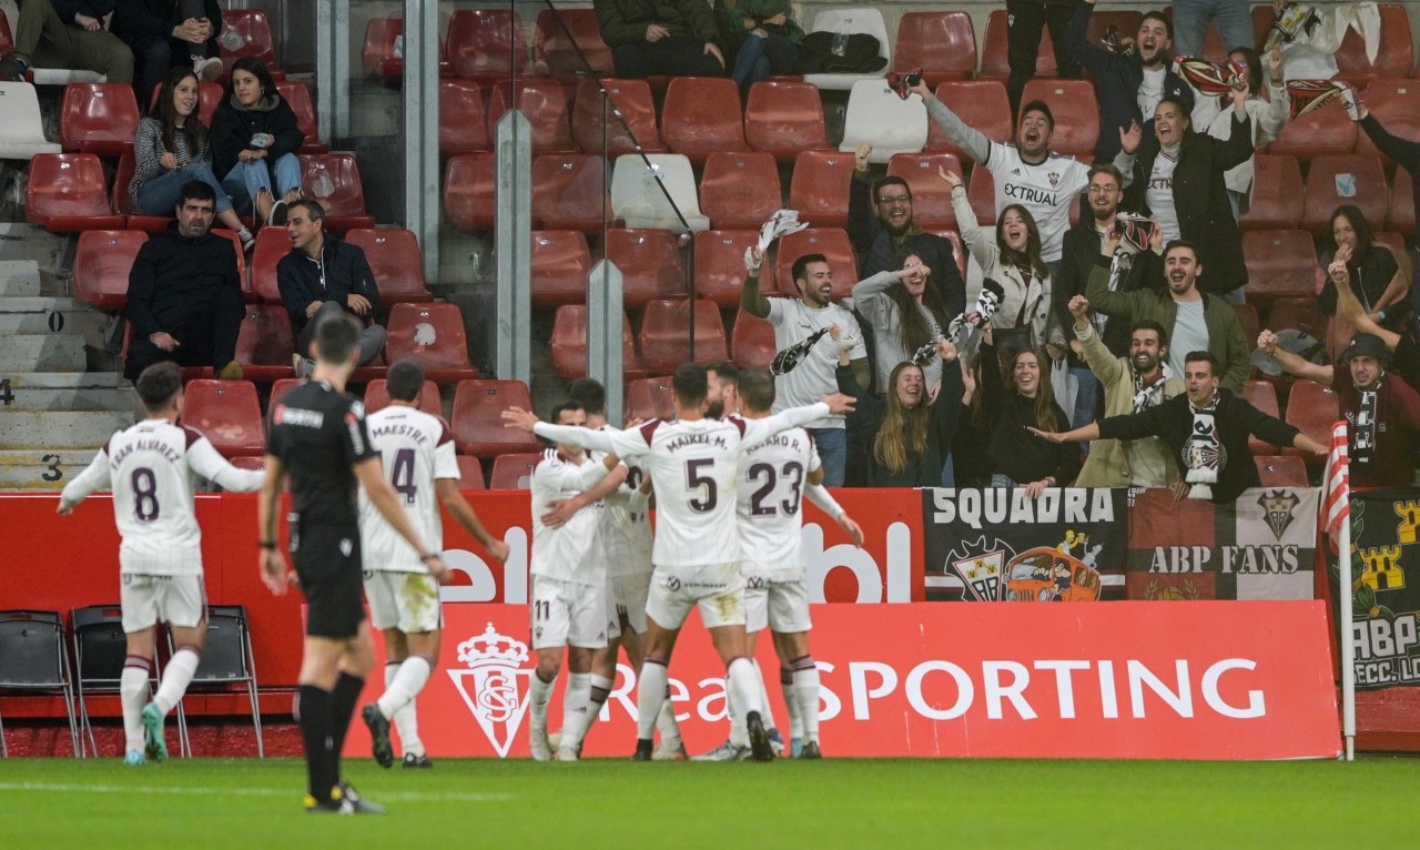 Sporting y Albacete empatan en un partido muy competido - ENCLM